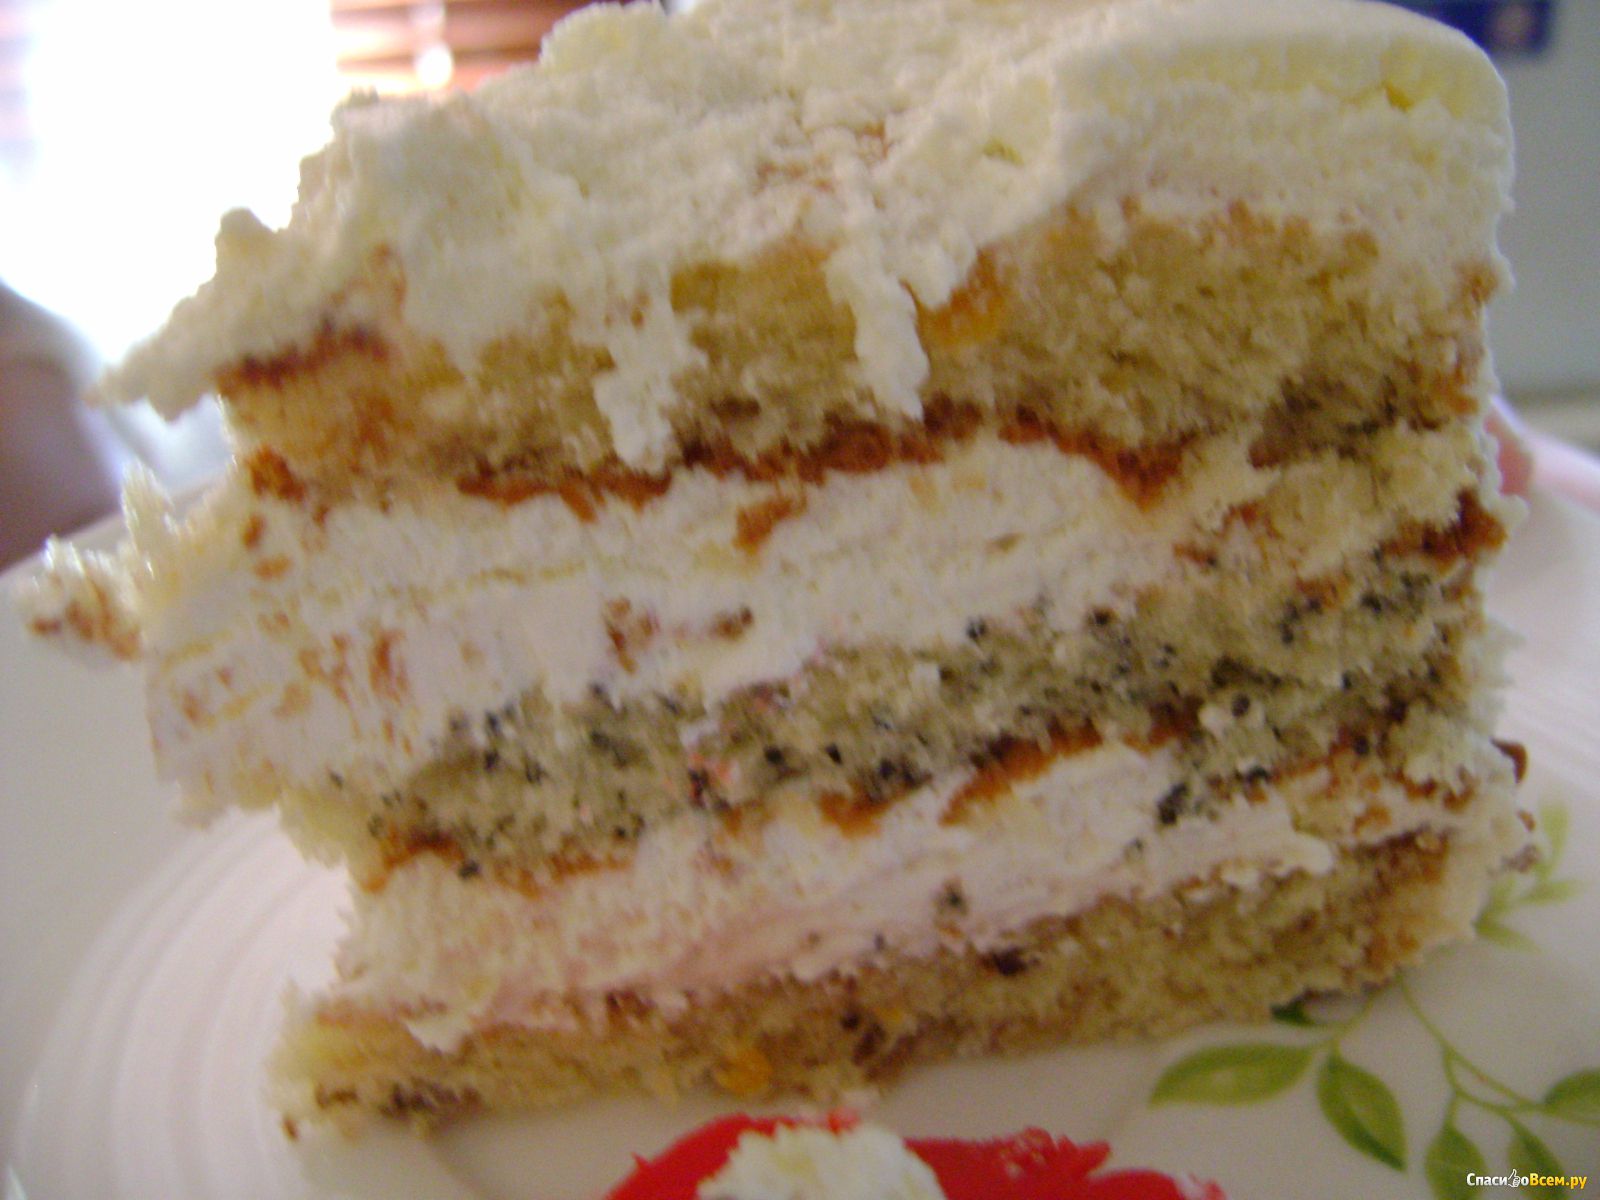 Торт смачный каприз. Торт белый каприз. Торт смачный каприз калорийность. Торты от любимая Шоколадница. Торт каприз купить